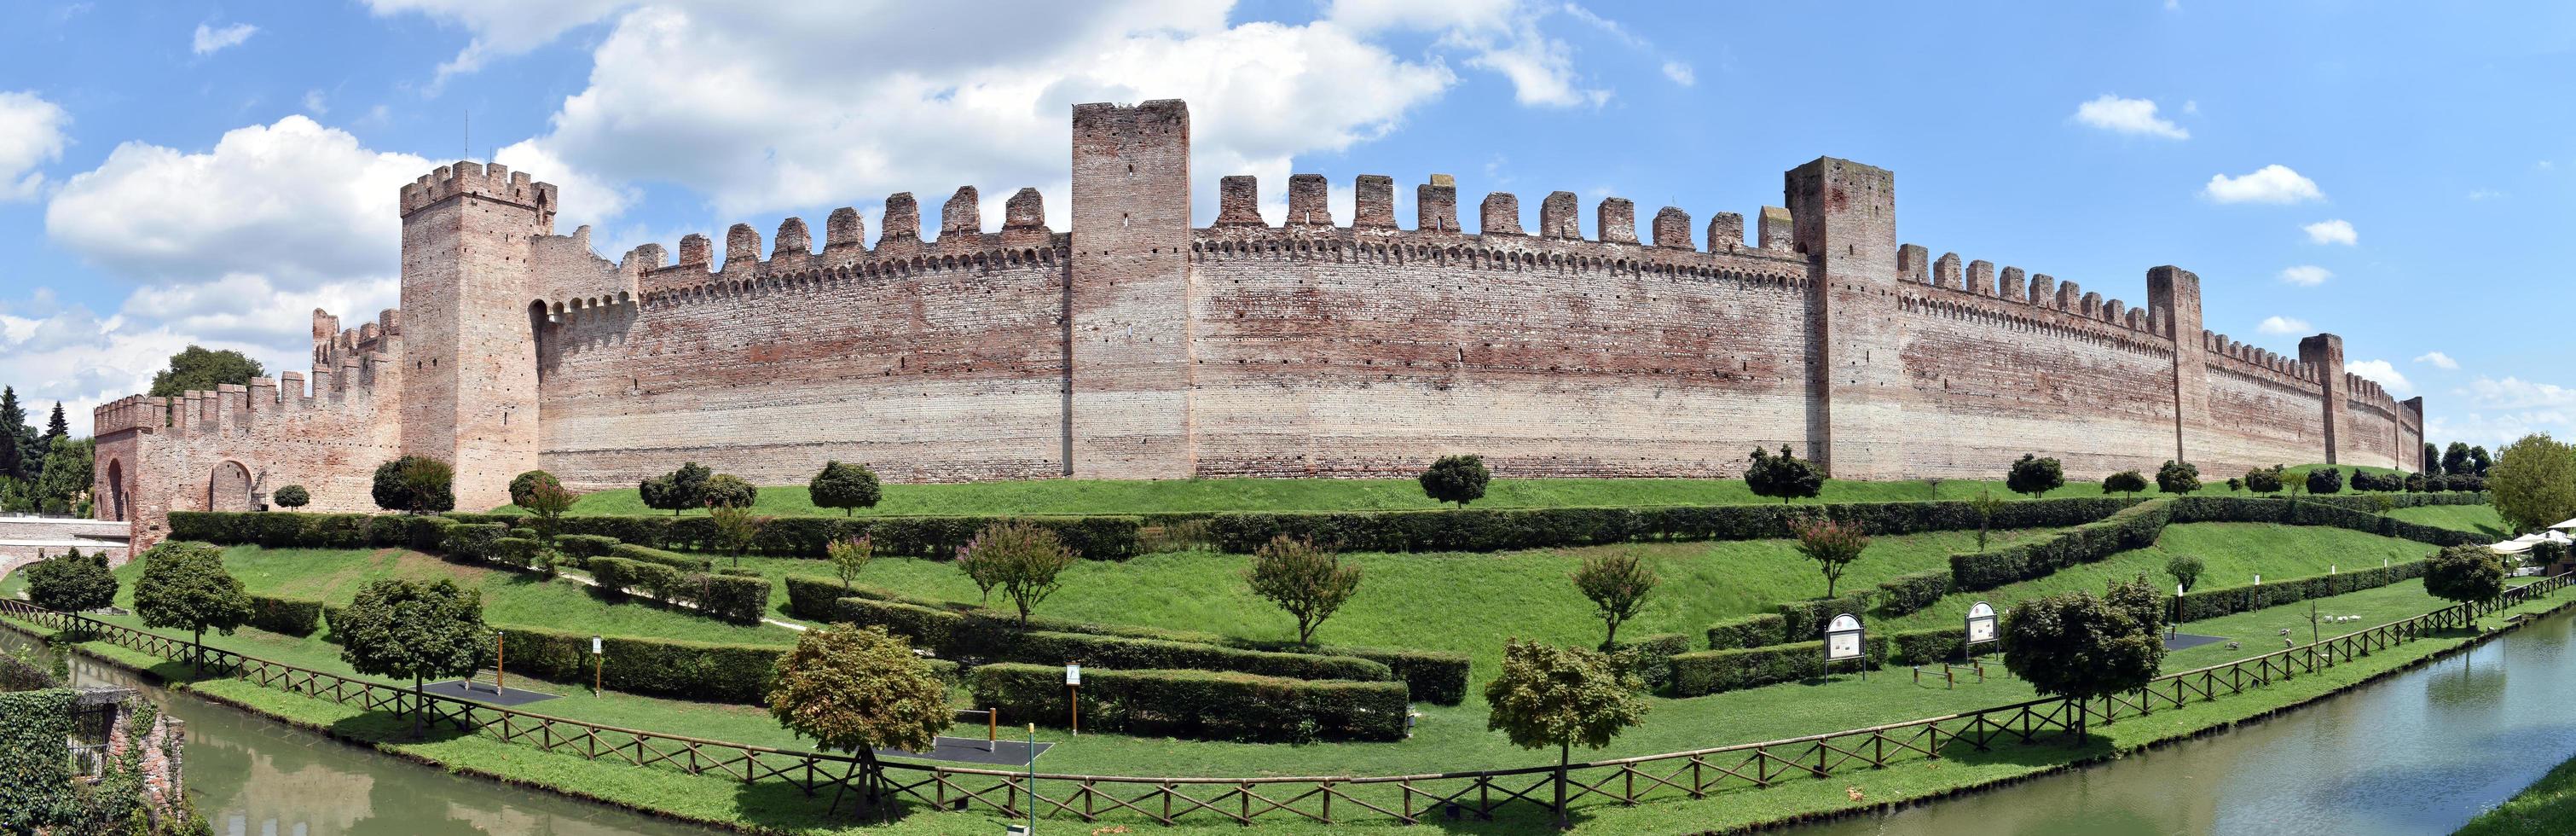 Panoramablick auf die Mauern der mittelalterlichen Festungsstadt Cittadella. Padua, Italien. foto